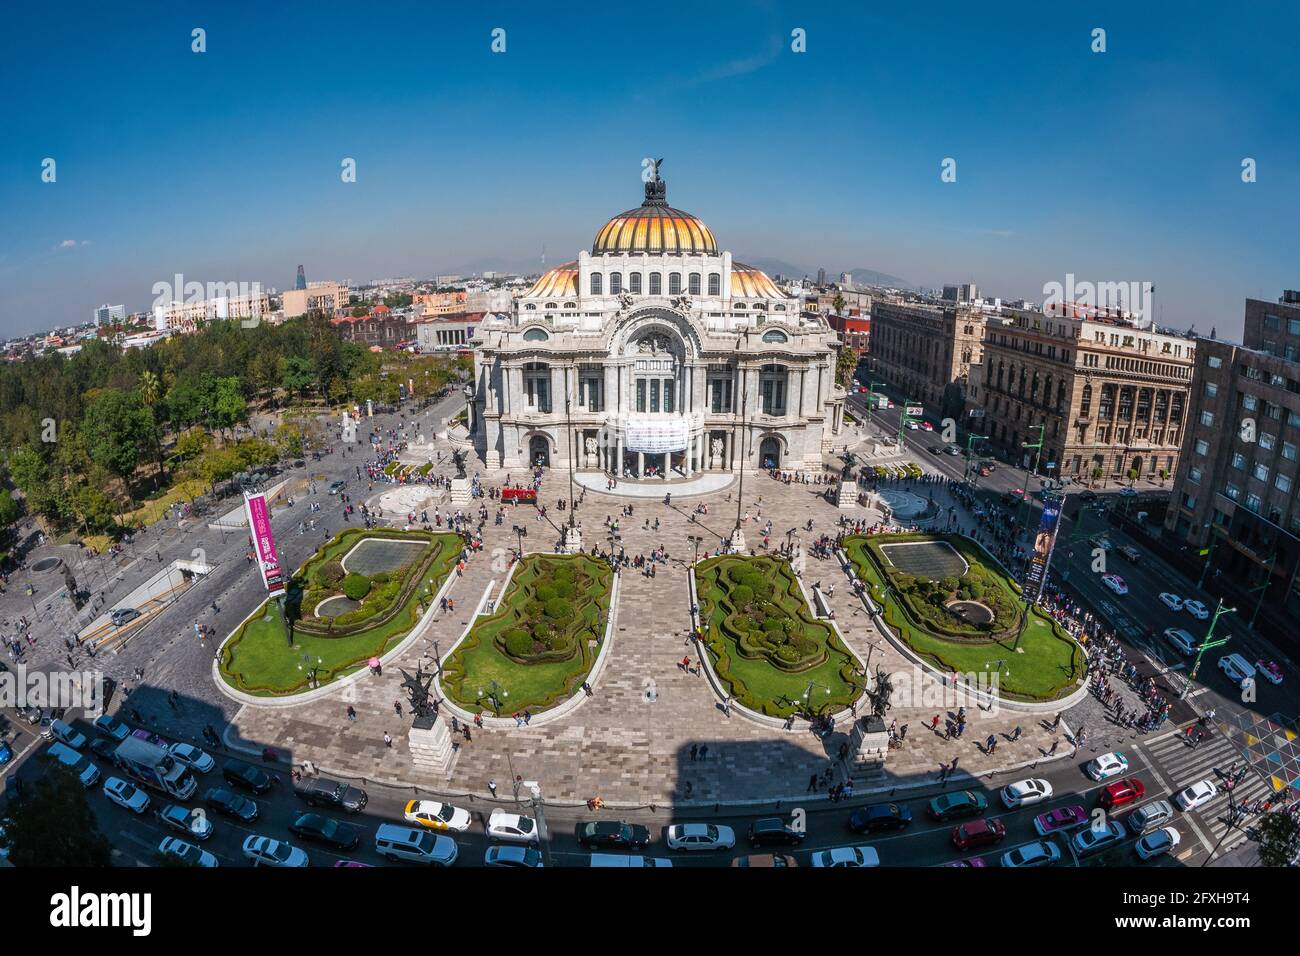 Monument architectural Palace of Fine Arts (en espagnol : Palacio de Bellas Artes) dans le centre historique de Mexico, Mexique. Banque D'Images